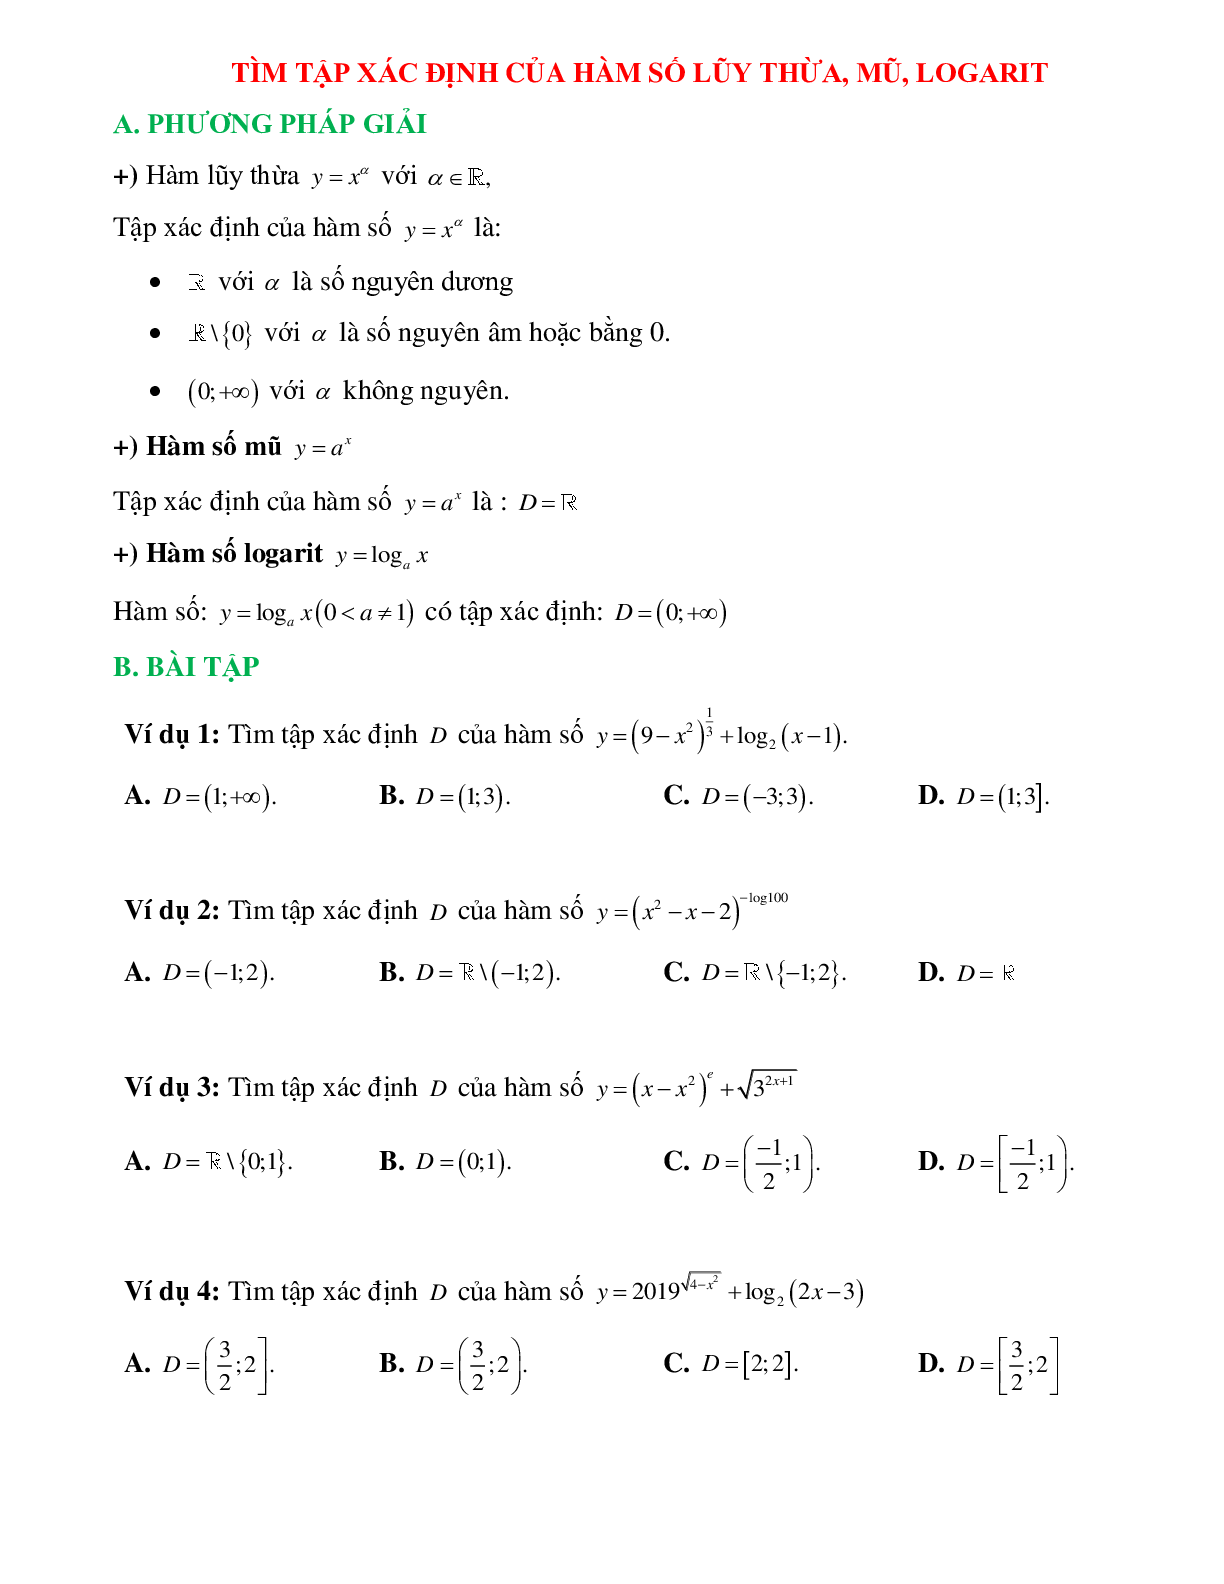 Phương pháp giải và bài tập về Tìm tập xác định của hàm số lũy thừa, hàm số mũ, hàm số logarit (trang 1)